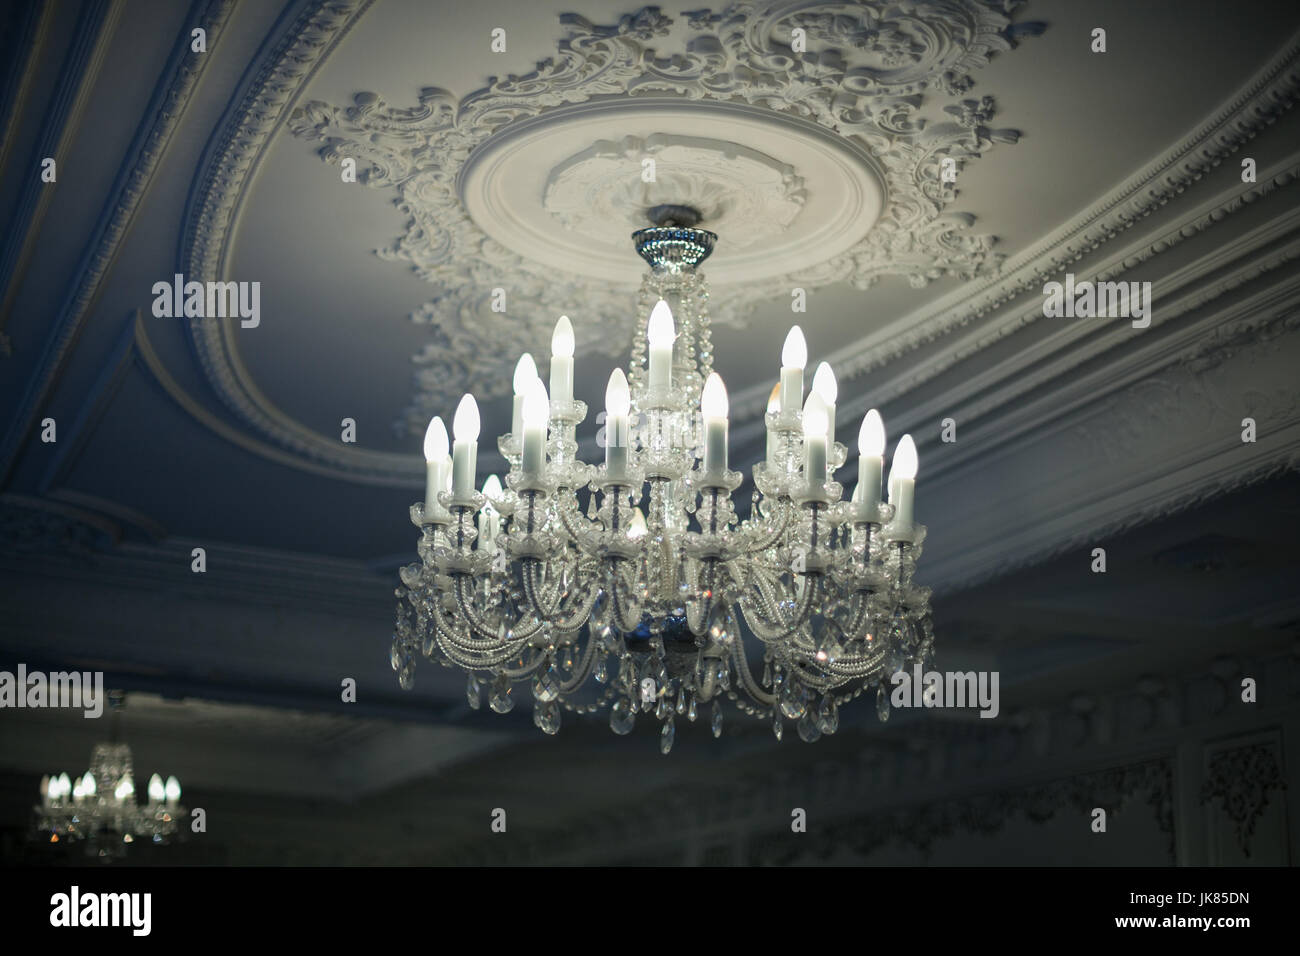 Beau lustre en cristal antique est suspendu au plafond dans l'ombre Banque D'Images